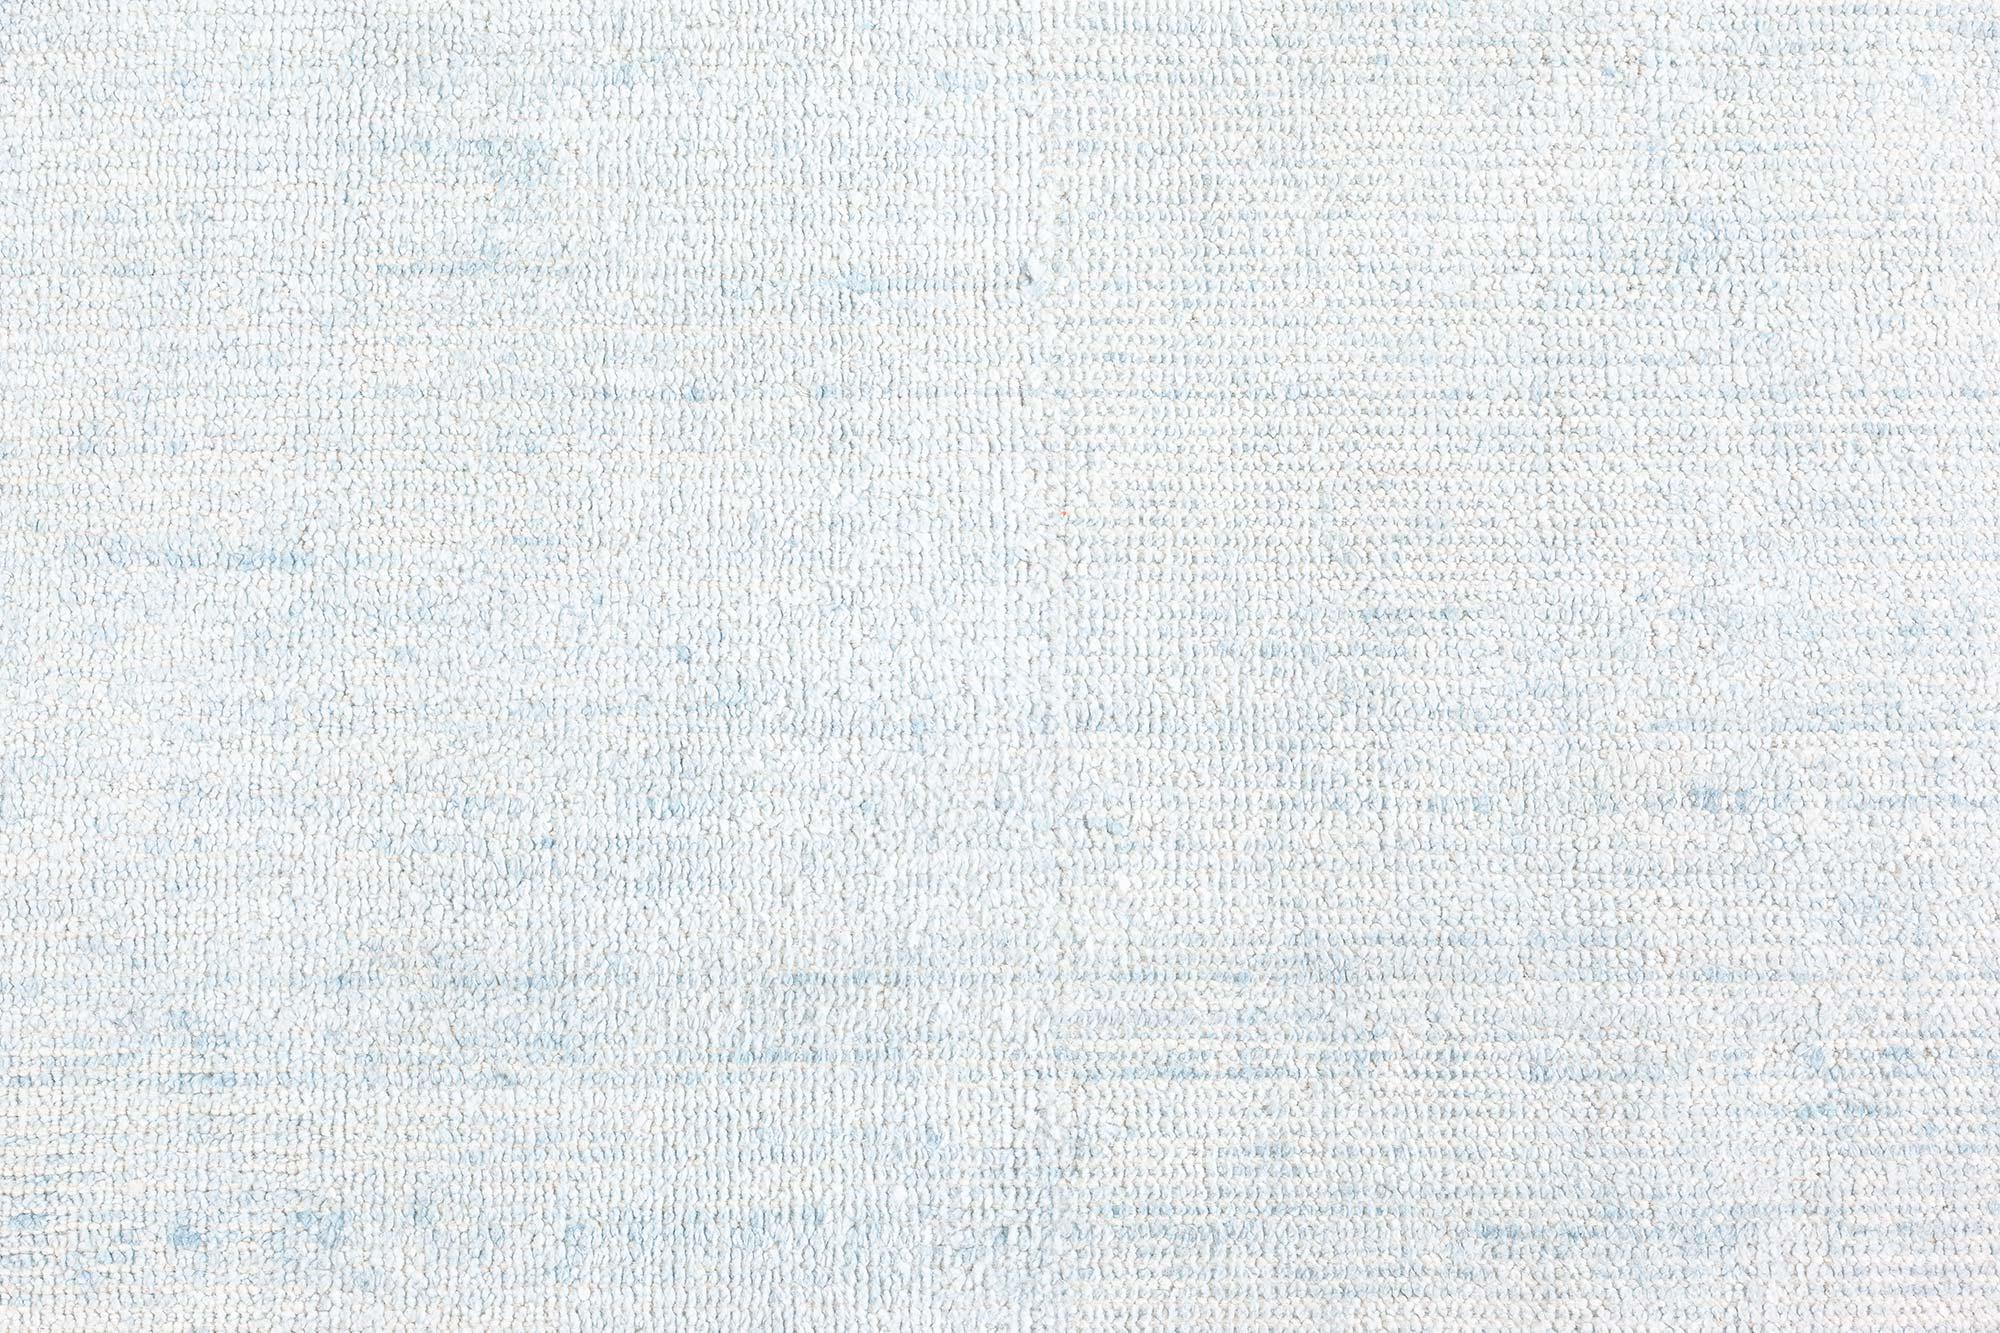 Aqua-blauer Wollteppich von Doris Leslie Blau
Größe: 3'5